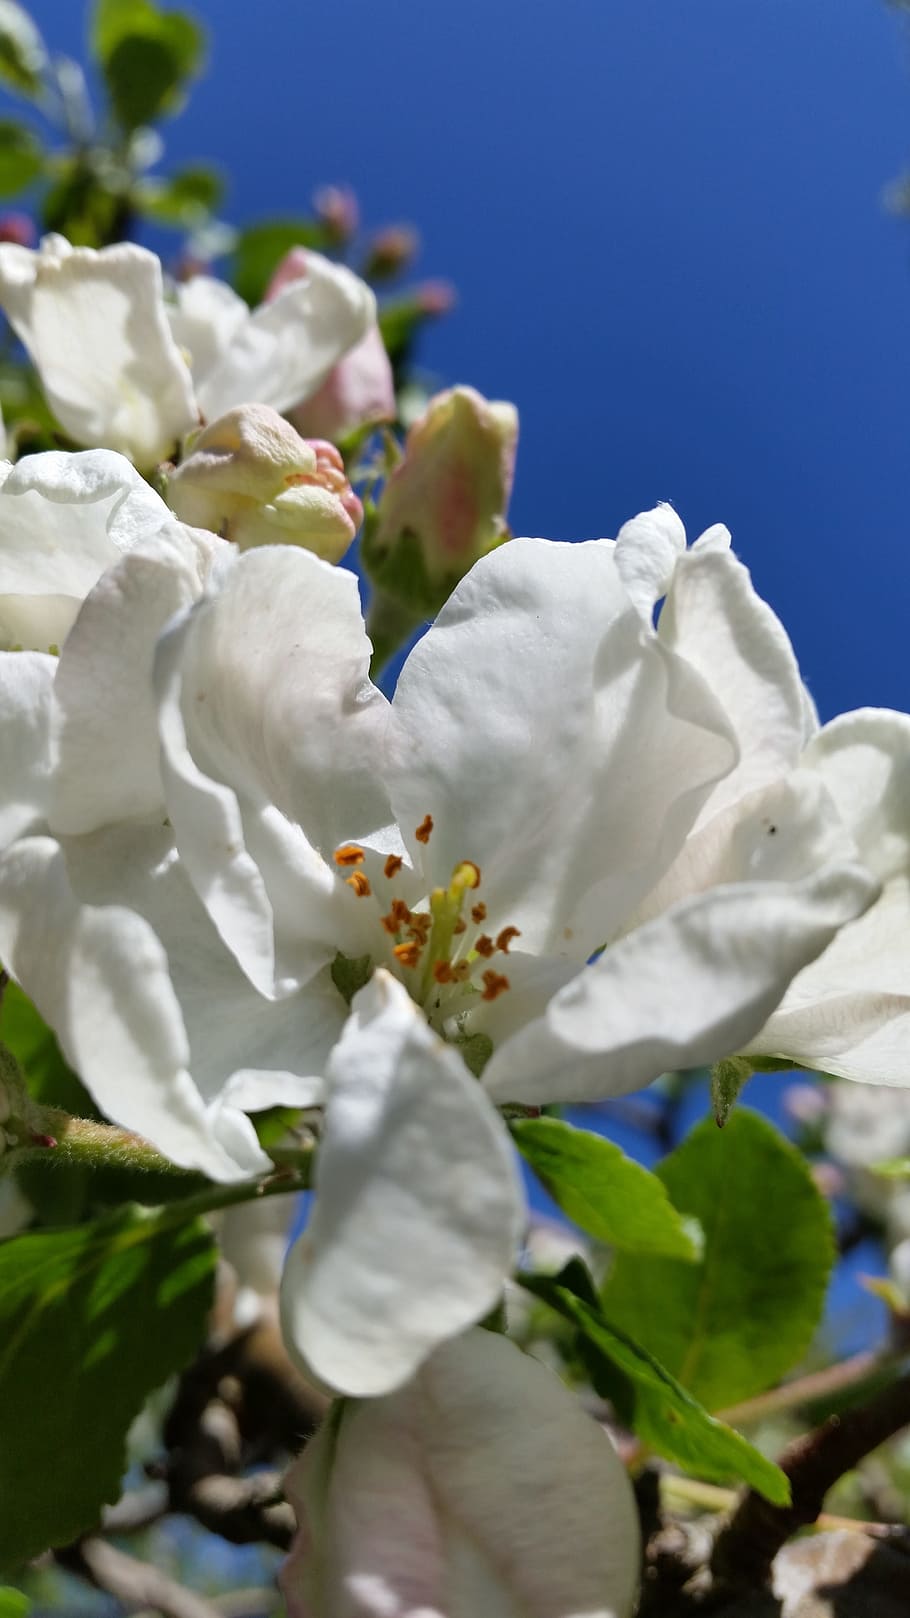 Apple Blossom, Branco, Flor, Verão, natureza, planta, azul, primavera, close-up, folha